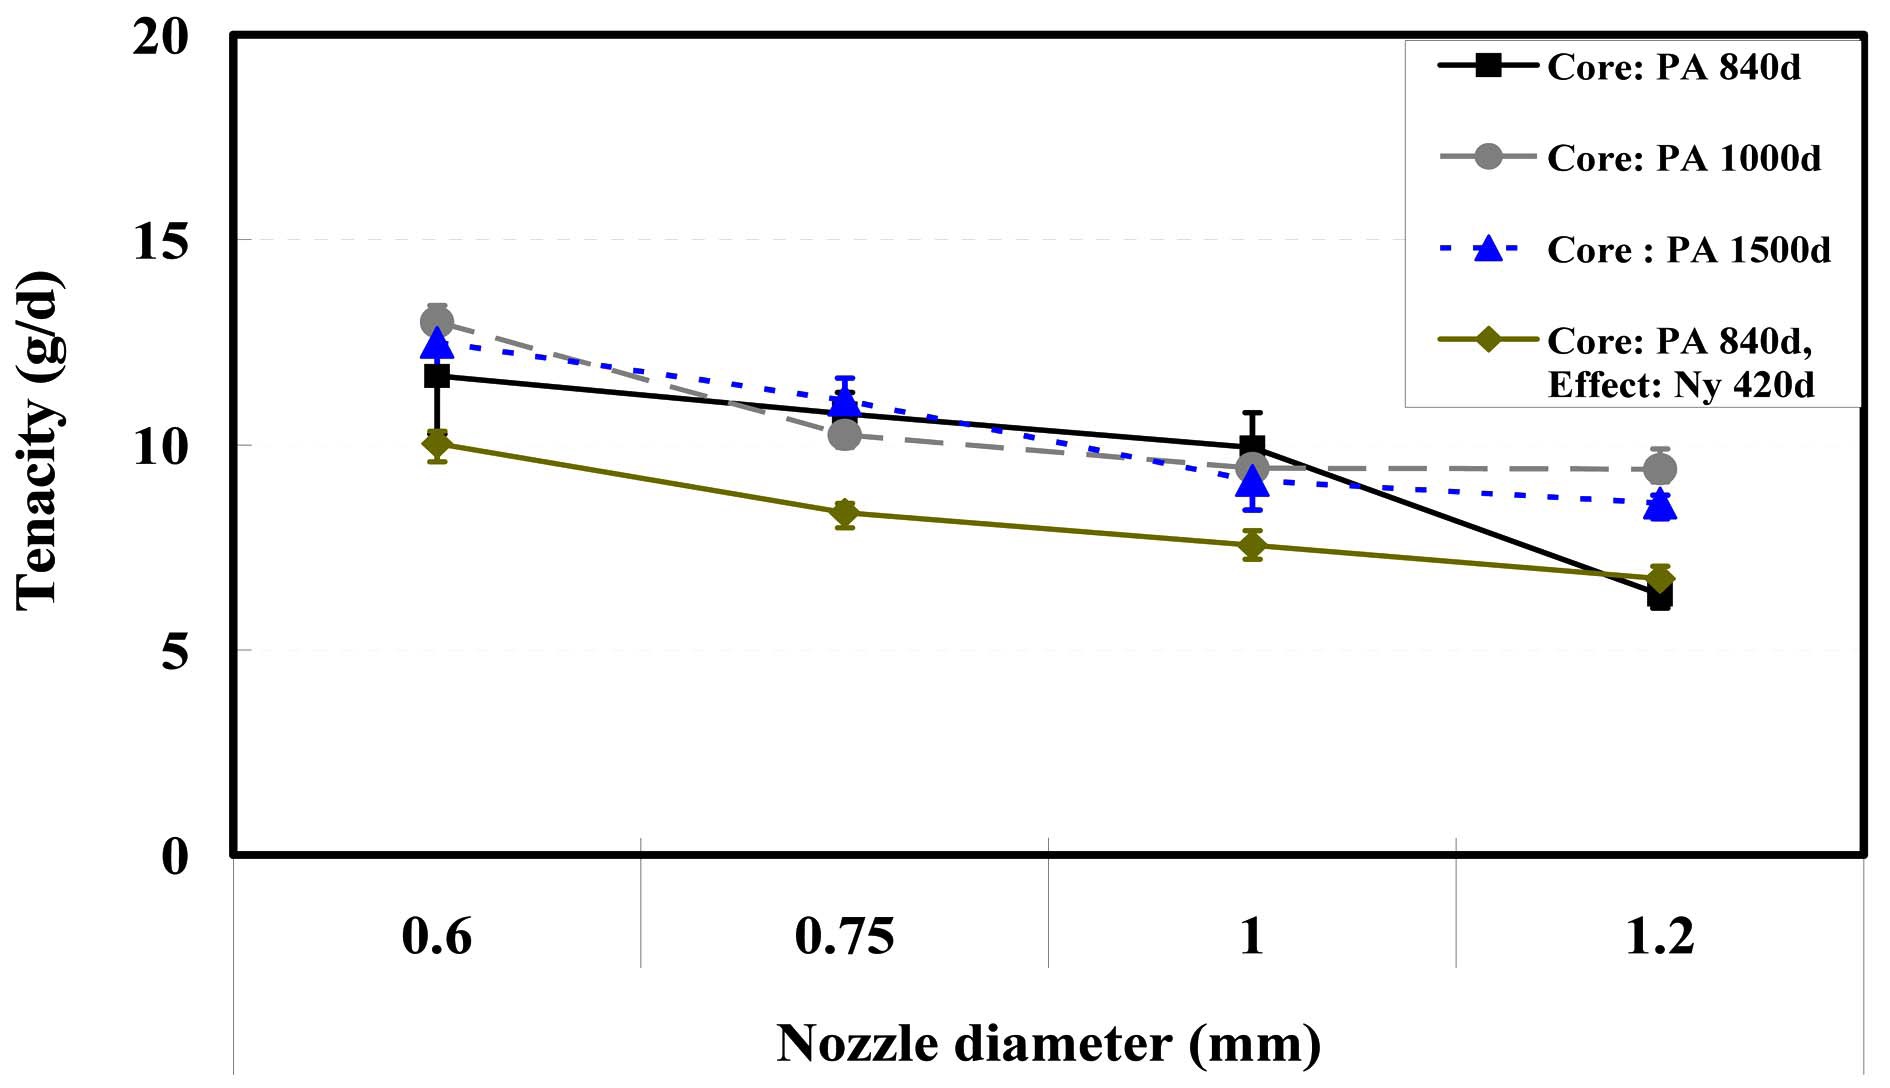 Tenacity of specimens according to the ATY nozzle diameter.